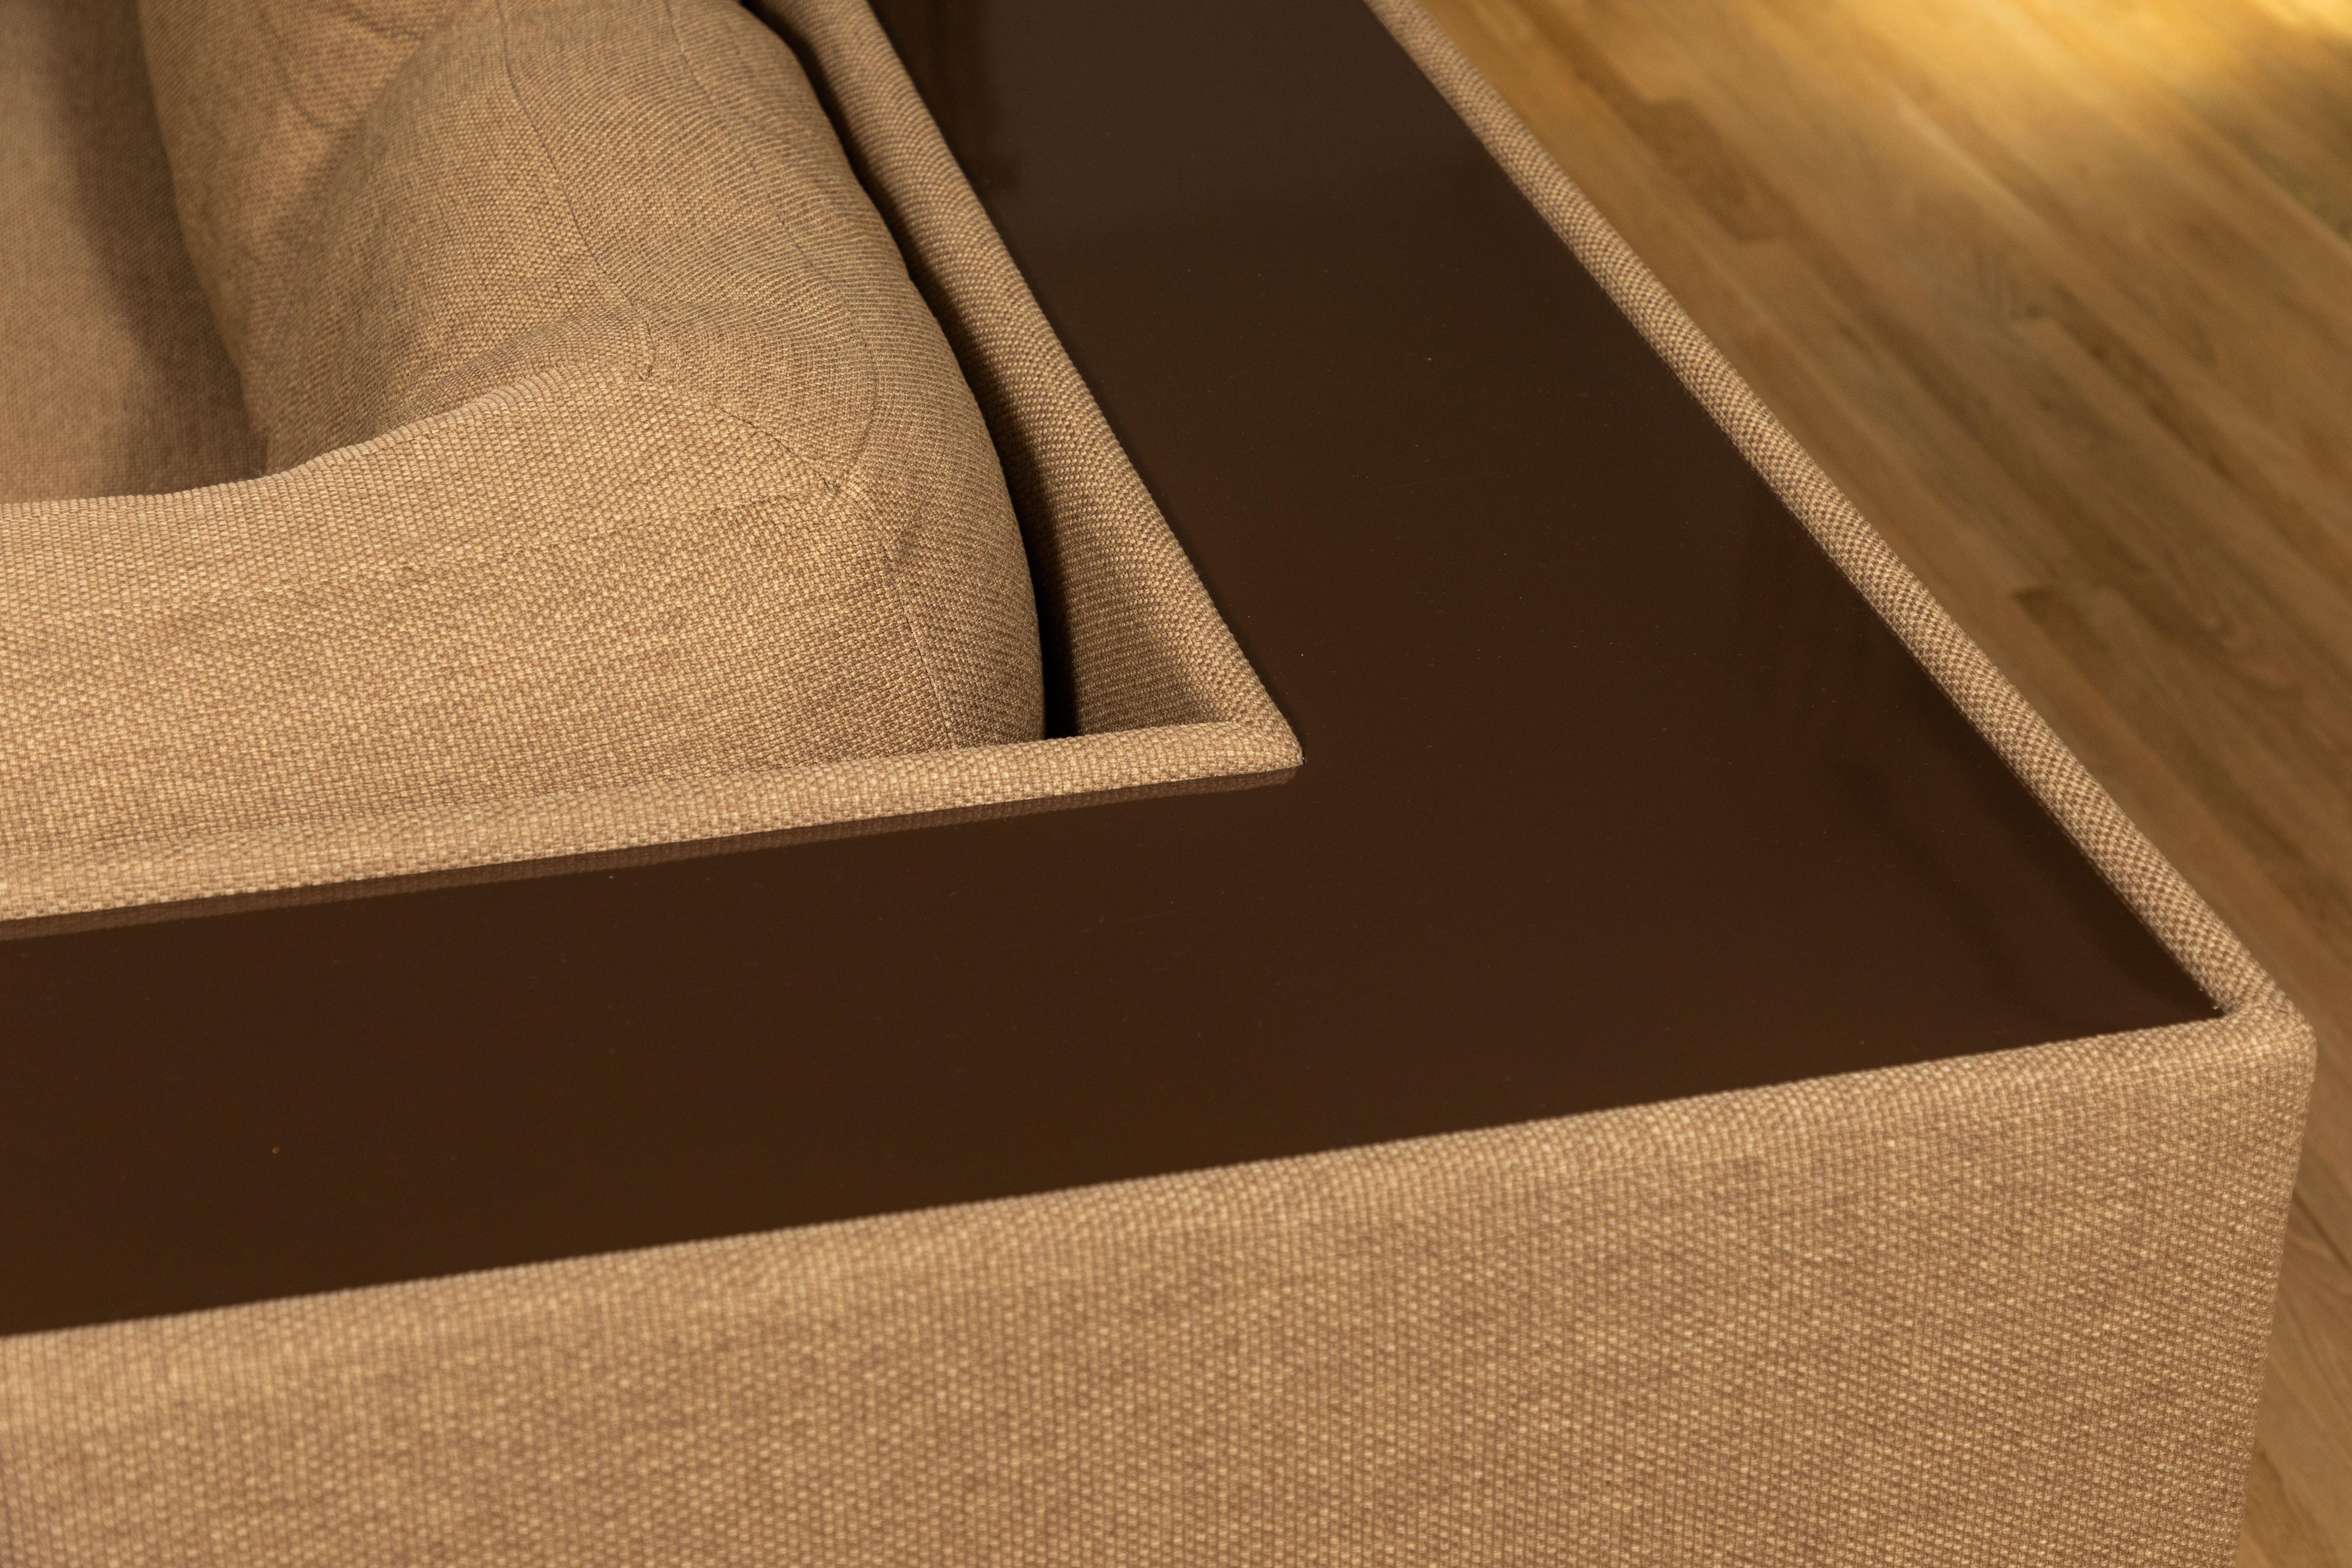 American Four-Piece Milo Baughman Sectional Sofa with Original Polymer Shelf Back